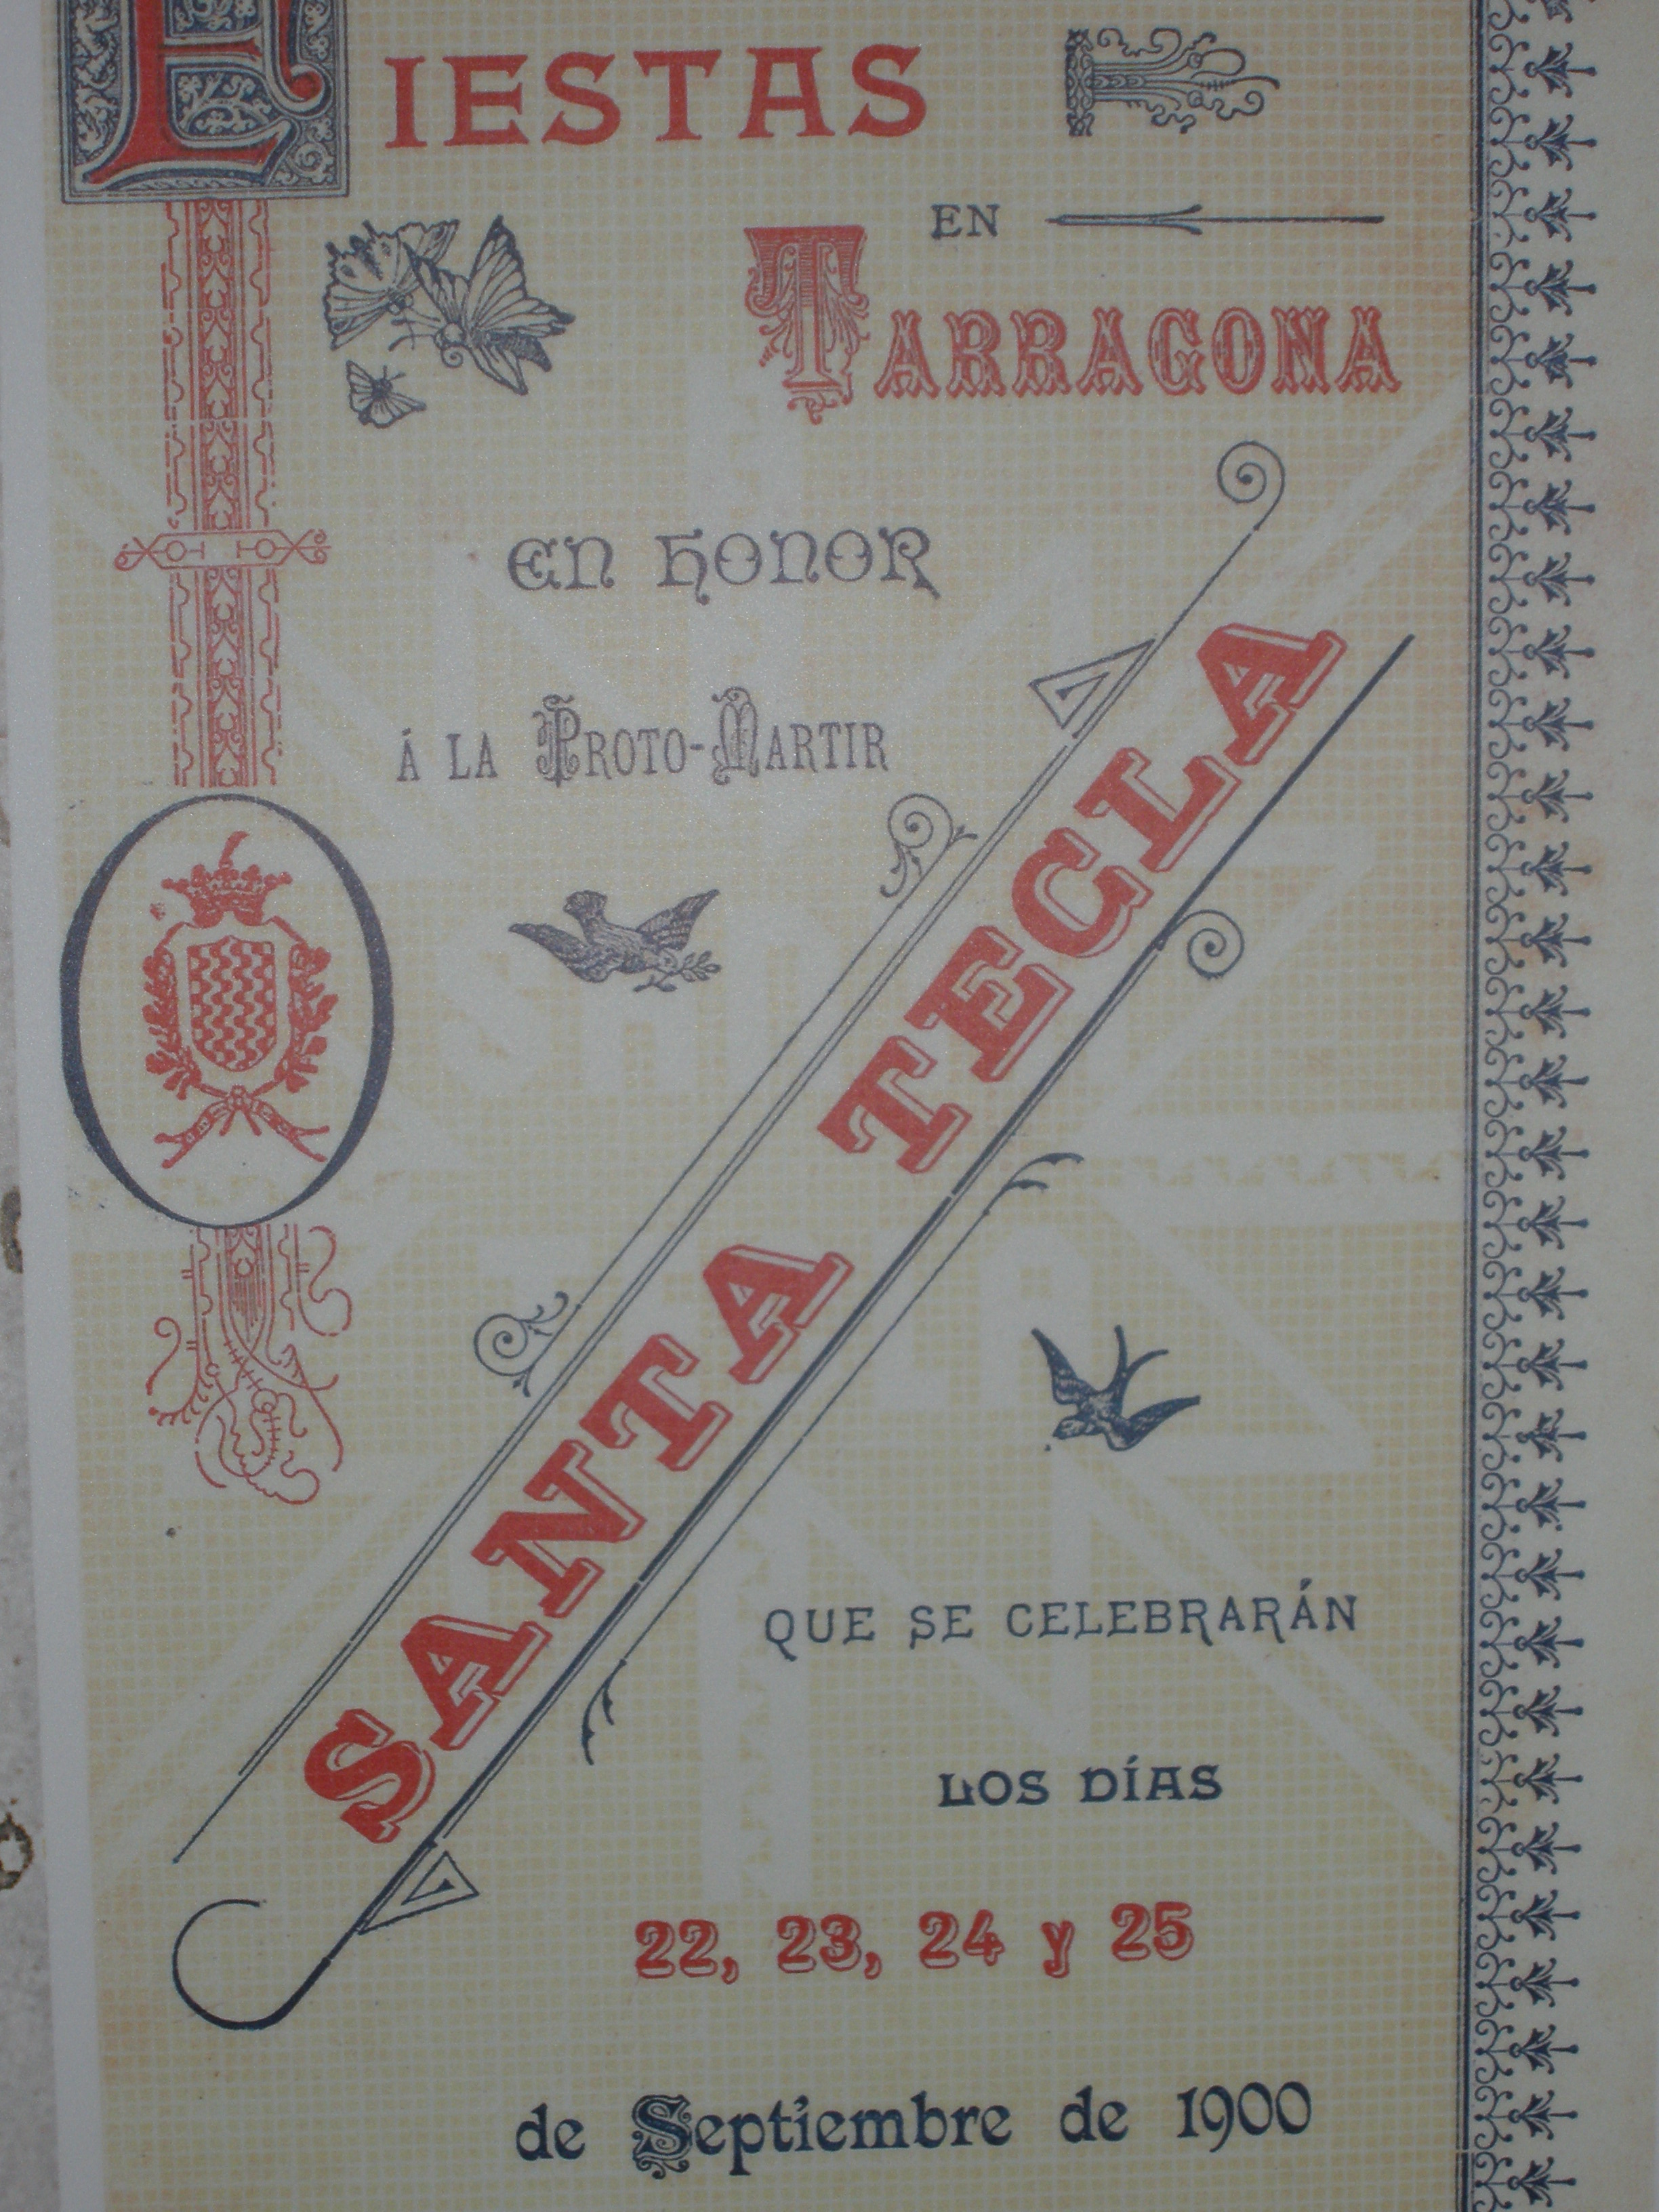 Cartell de les festes de Santa Tecla de l'any 1900. Es pot veure a l'exposició de l'Arxiu de Tarragona